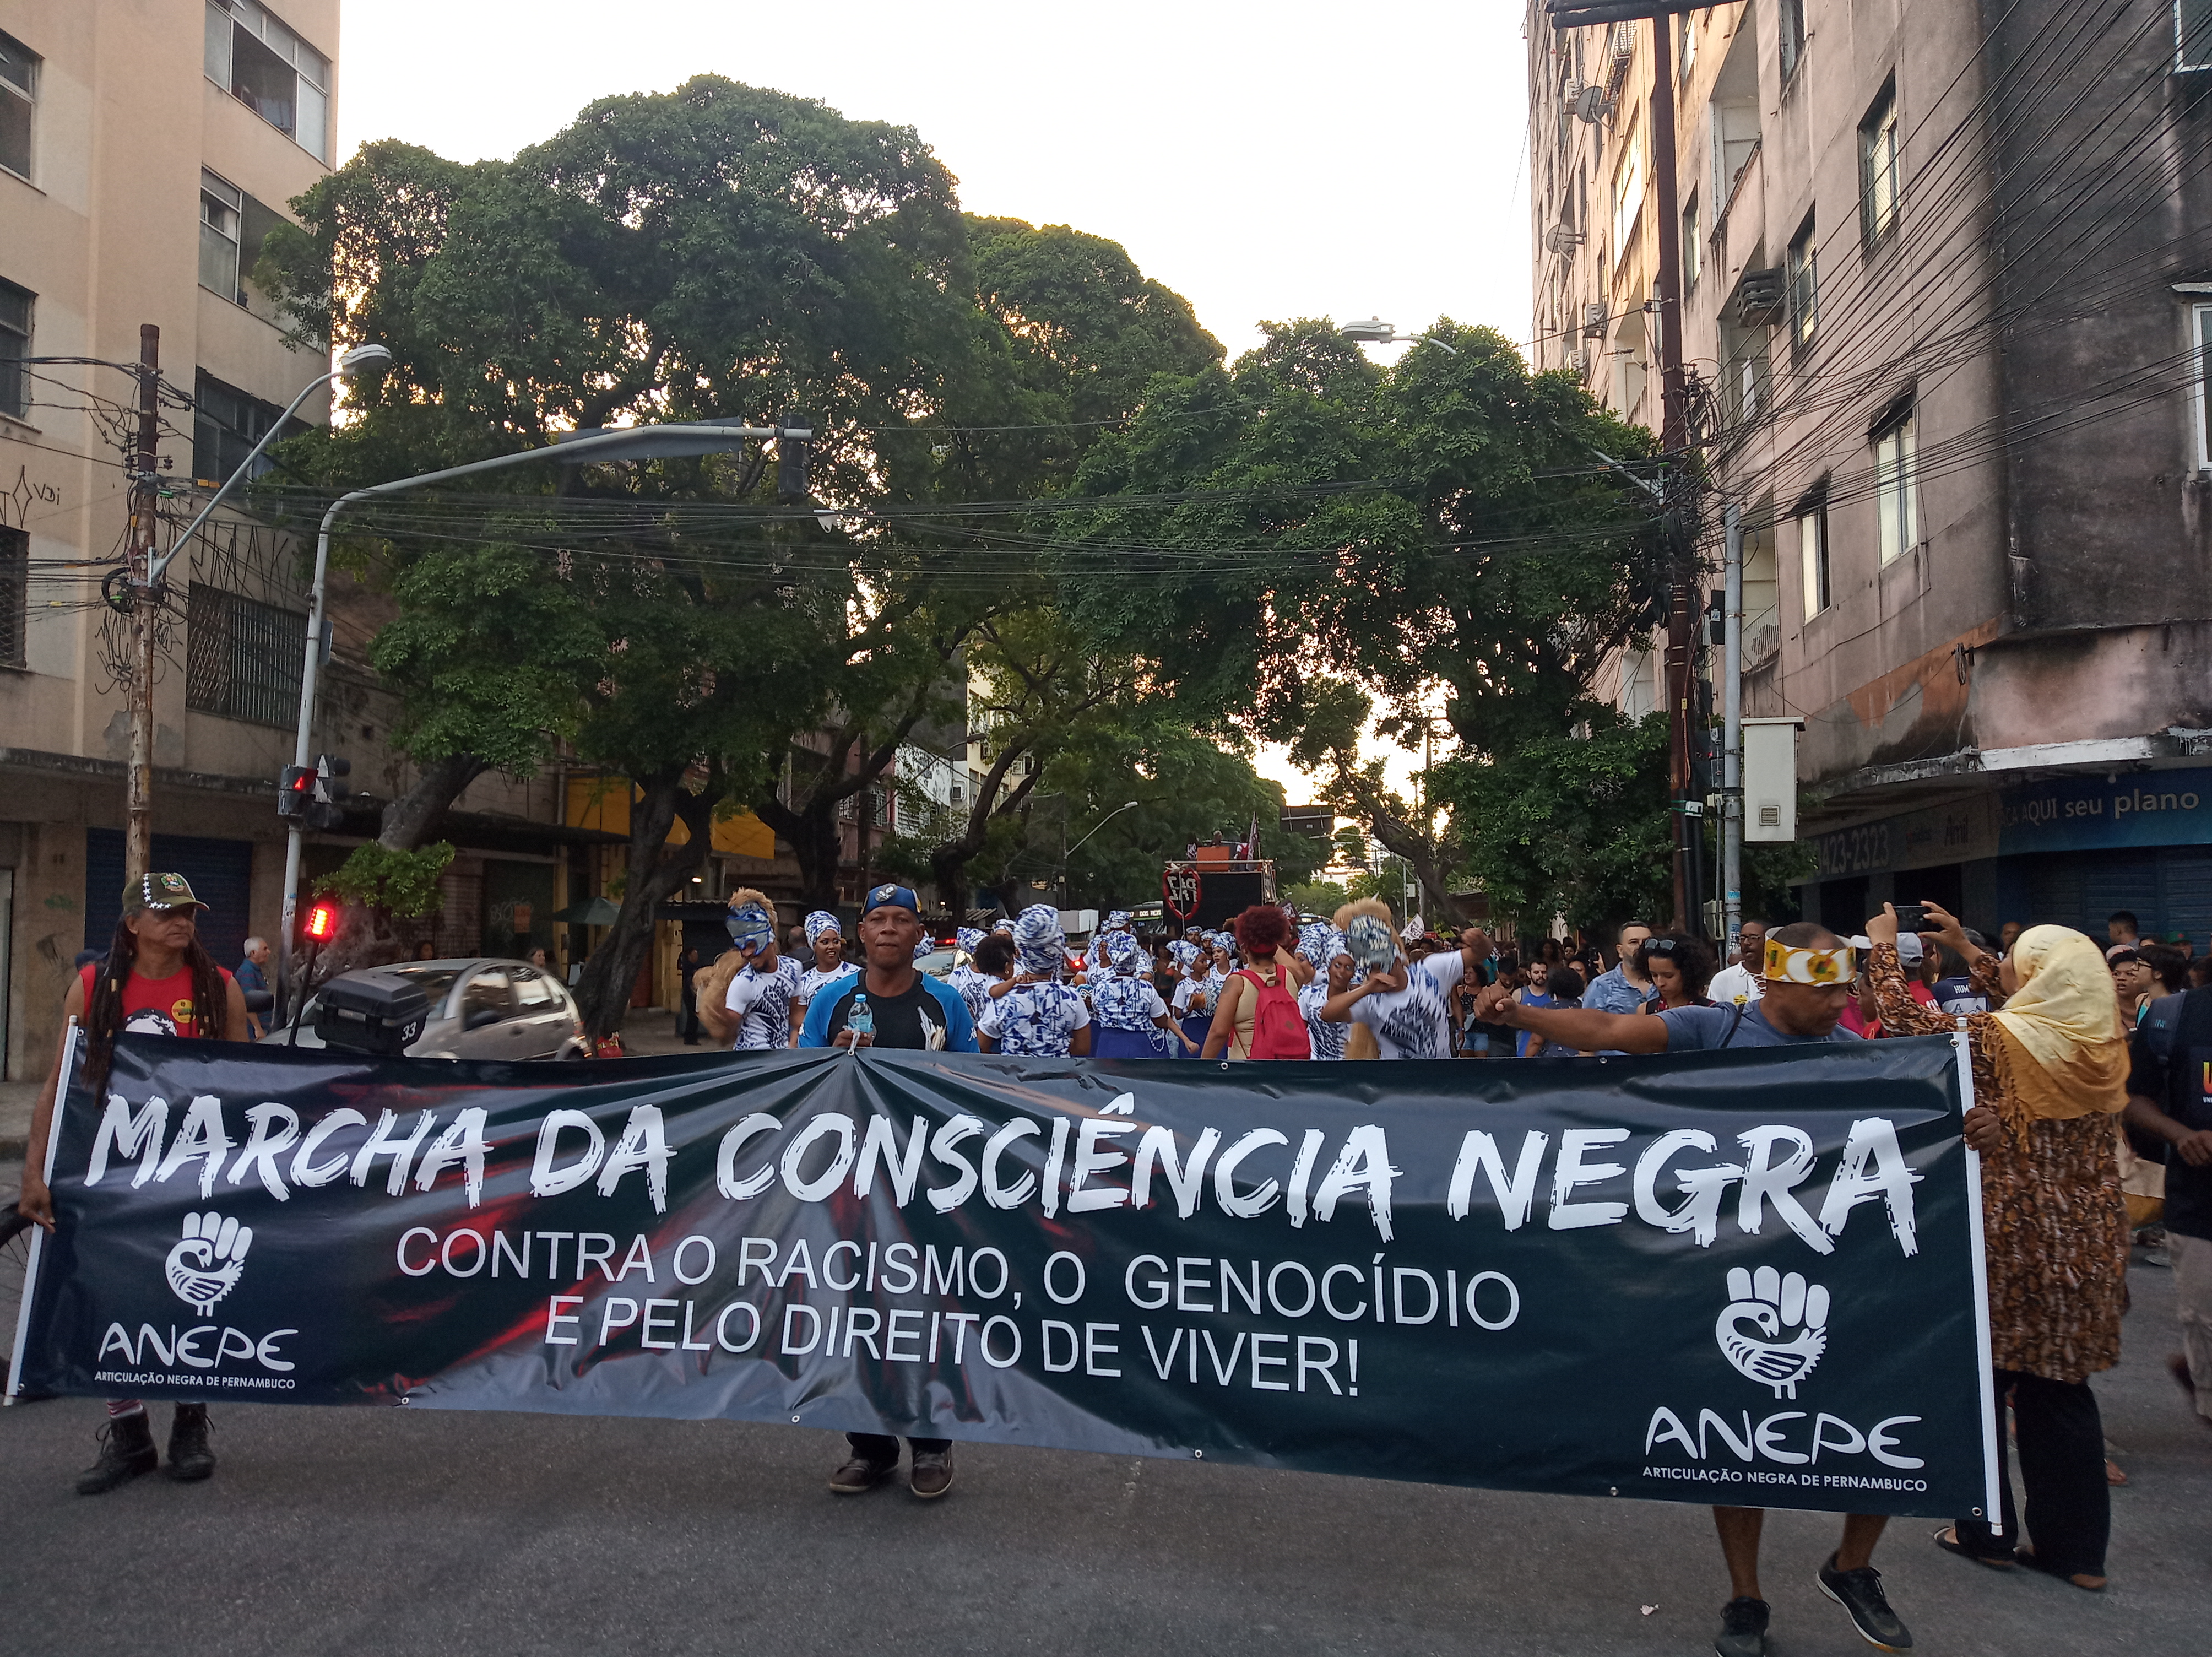 Marcha da Consciência Negra ocupa as ruas de Recife